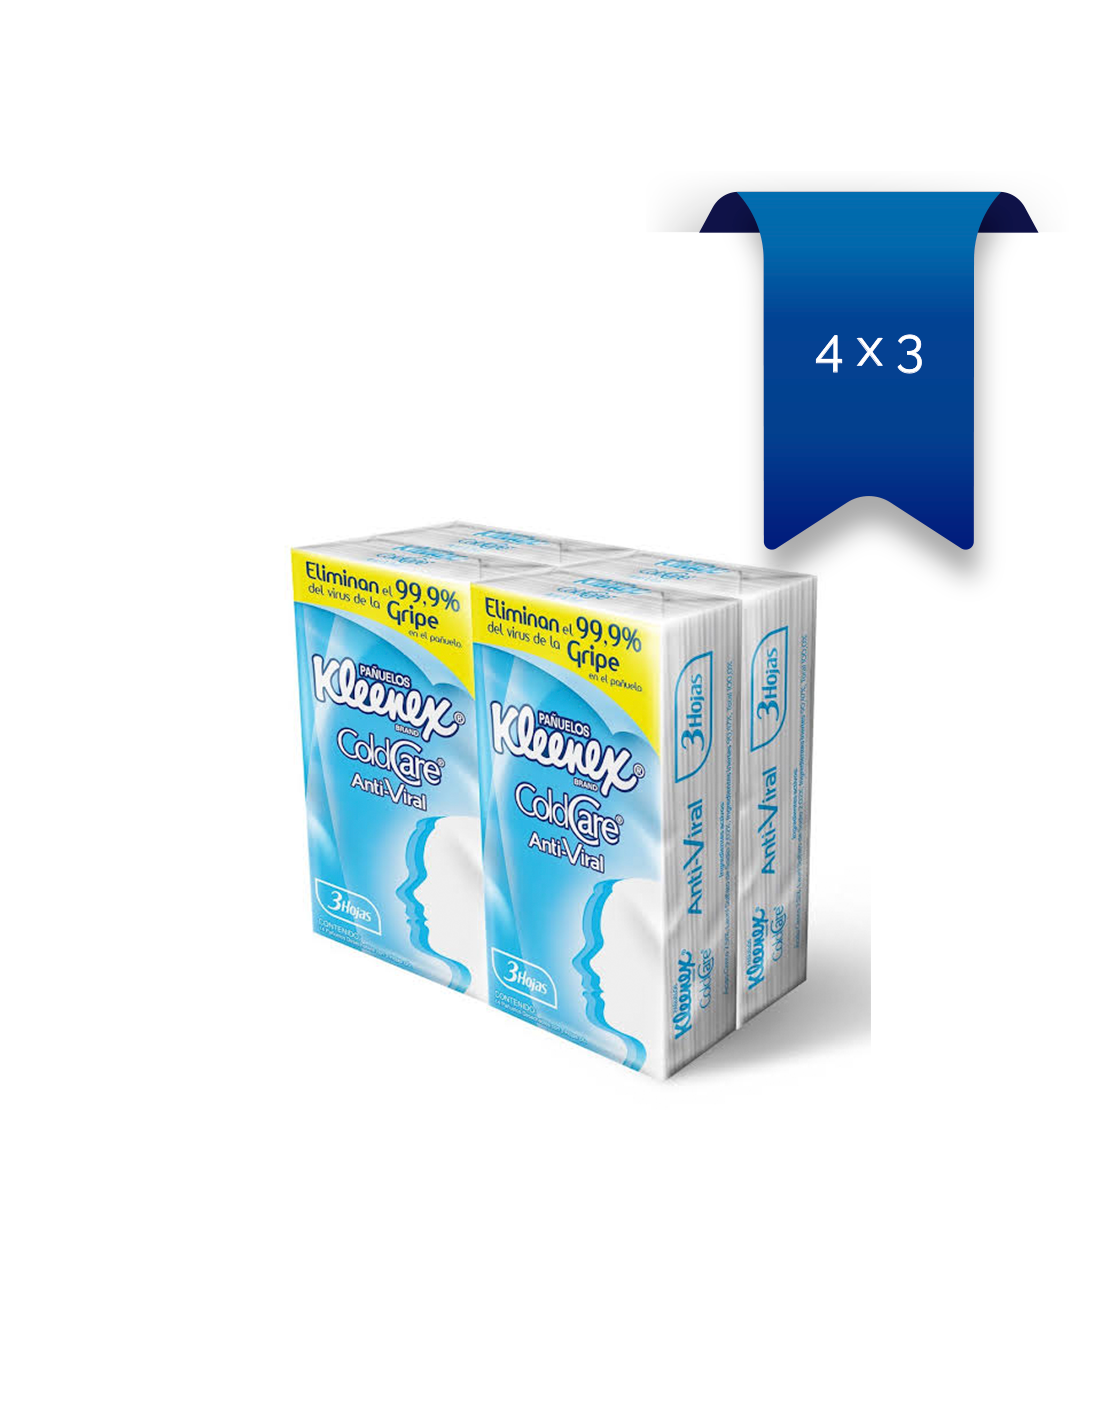 kleenex caja pañuelos papel recurso estornudo gripe catarro mocos  constipado resfriado - Farmacosalud